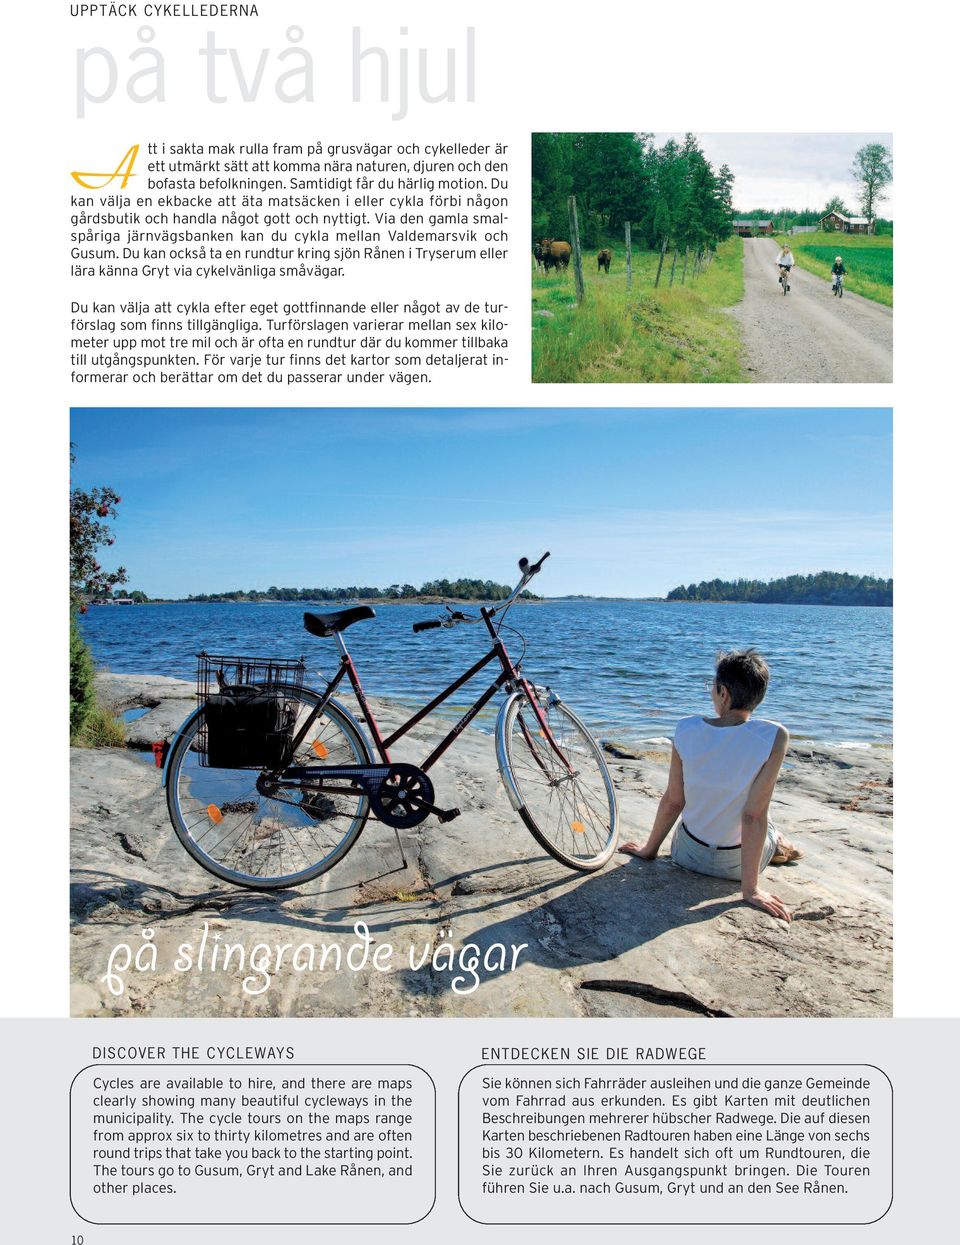 Via den gamla smalspåriga järnvägsbanken kan du cykla mellan Valdemarsvik och Gusum. Du kan också ta en rundtur kring sjön Rånen i Tryserum eller lära känna Gryt via cykelvänliga småvägar.